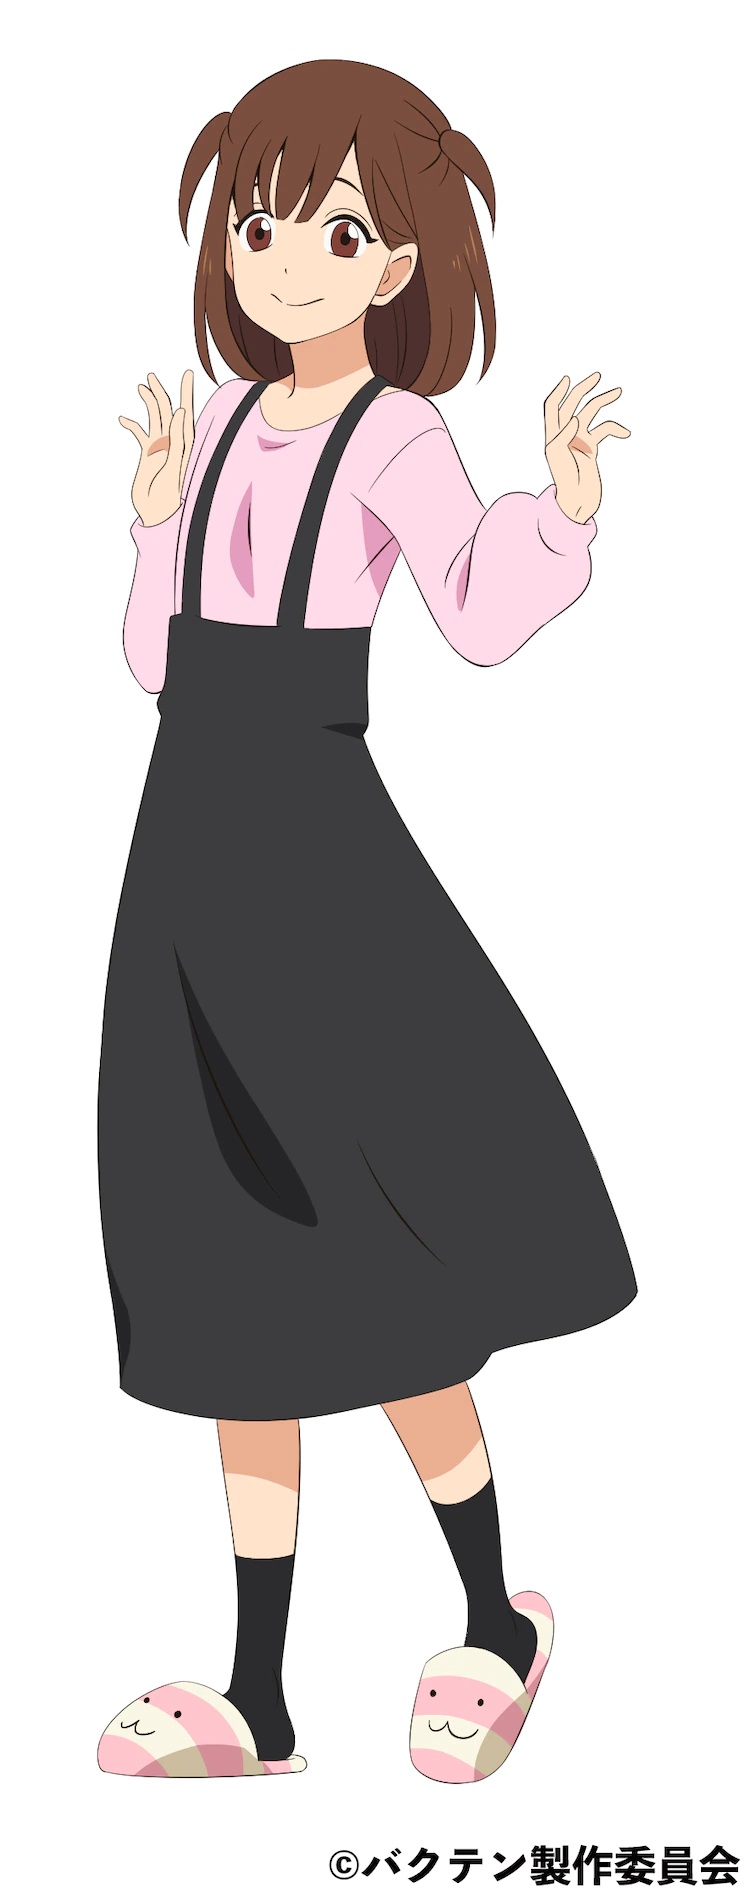 ¡¡Un escenario de personajes de Ayumi Futaba del próximo Bakuten !!  Anime de TV.  Ayumi es una estudiante de segundo año de secundaria con cabello castaño peinado con coletas y ojos marrones.  Lleva una blusa rosa, una falda negra, calcetines negros y pantuflas de animales peludos.